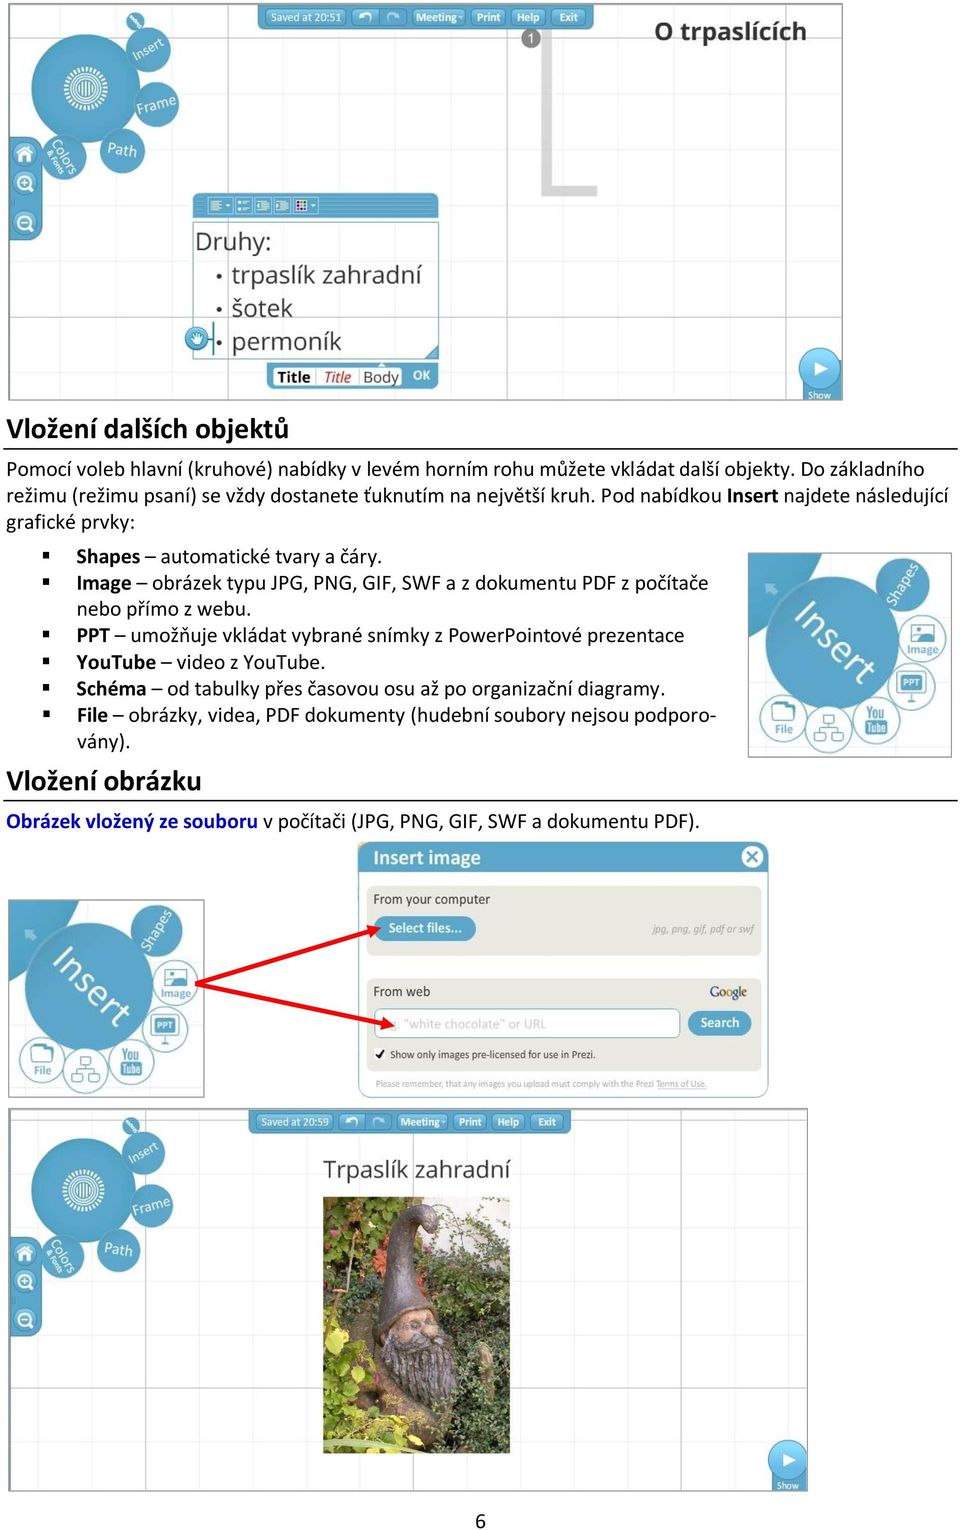 Image obrázek typu JPG, PNG, GIF, SWF a z dokumentu PDF z počítače nebo přímo z webu.